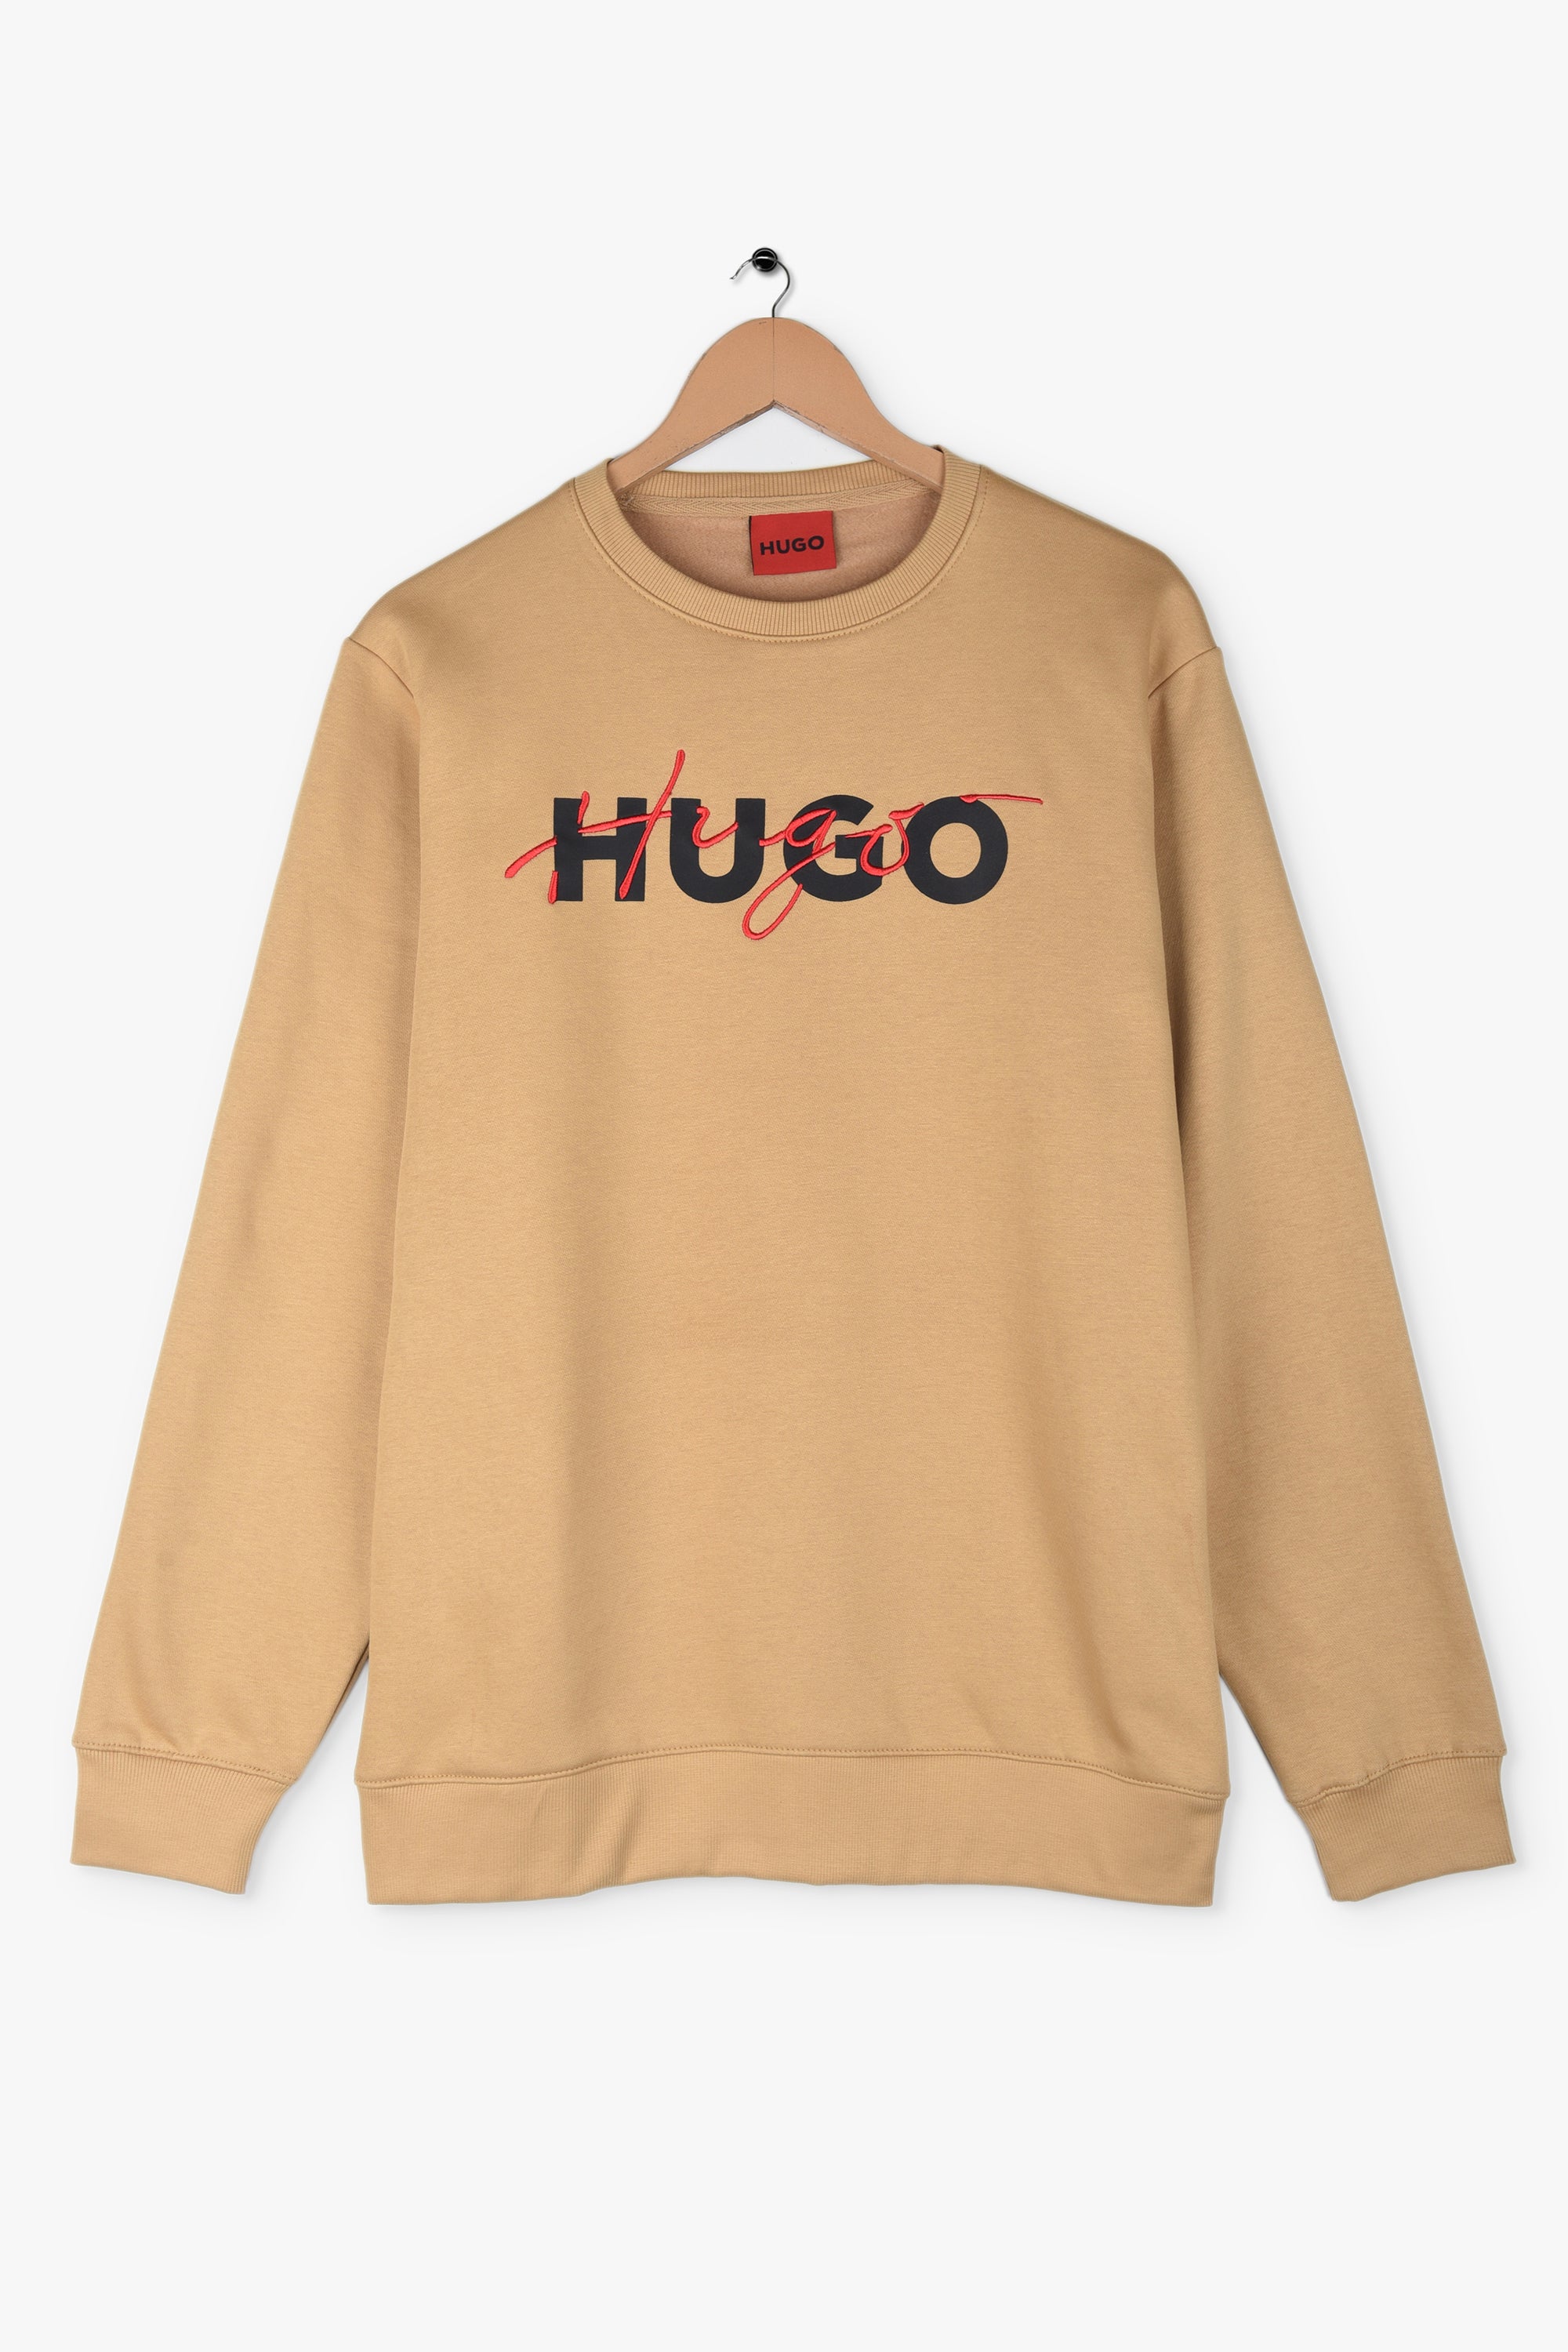 HUGO BOSS HYBRID LOGO FLEECE Sweatshirt